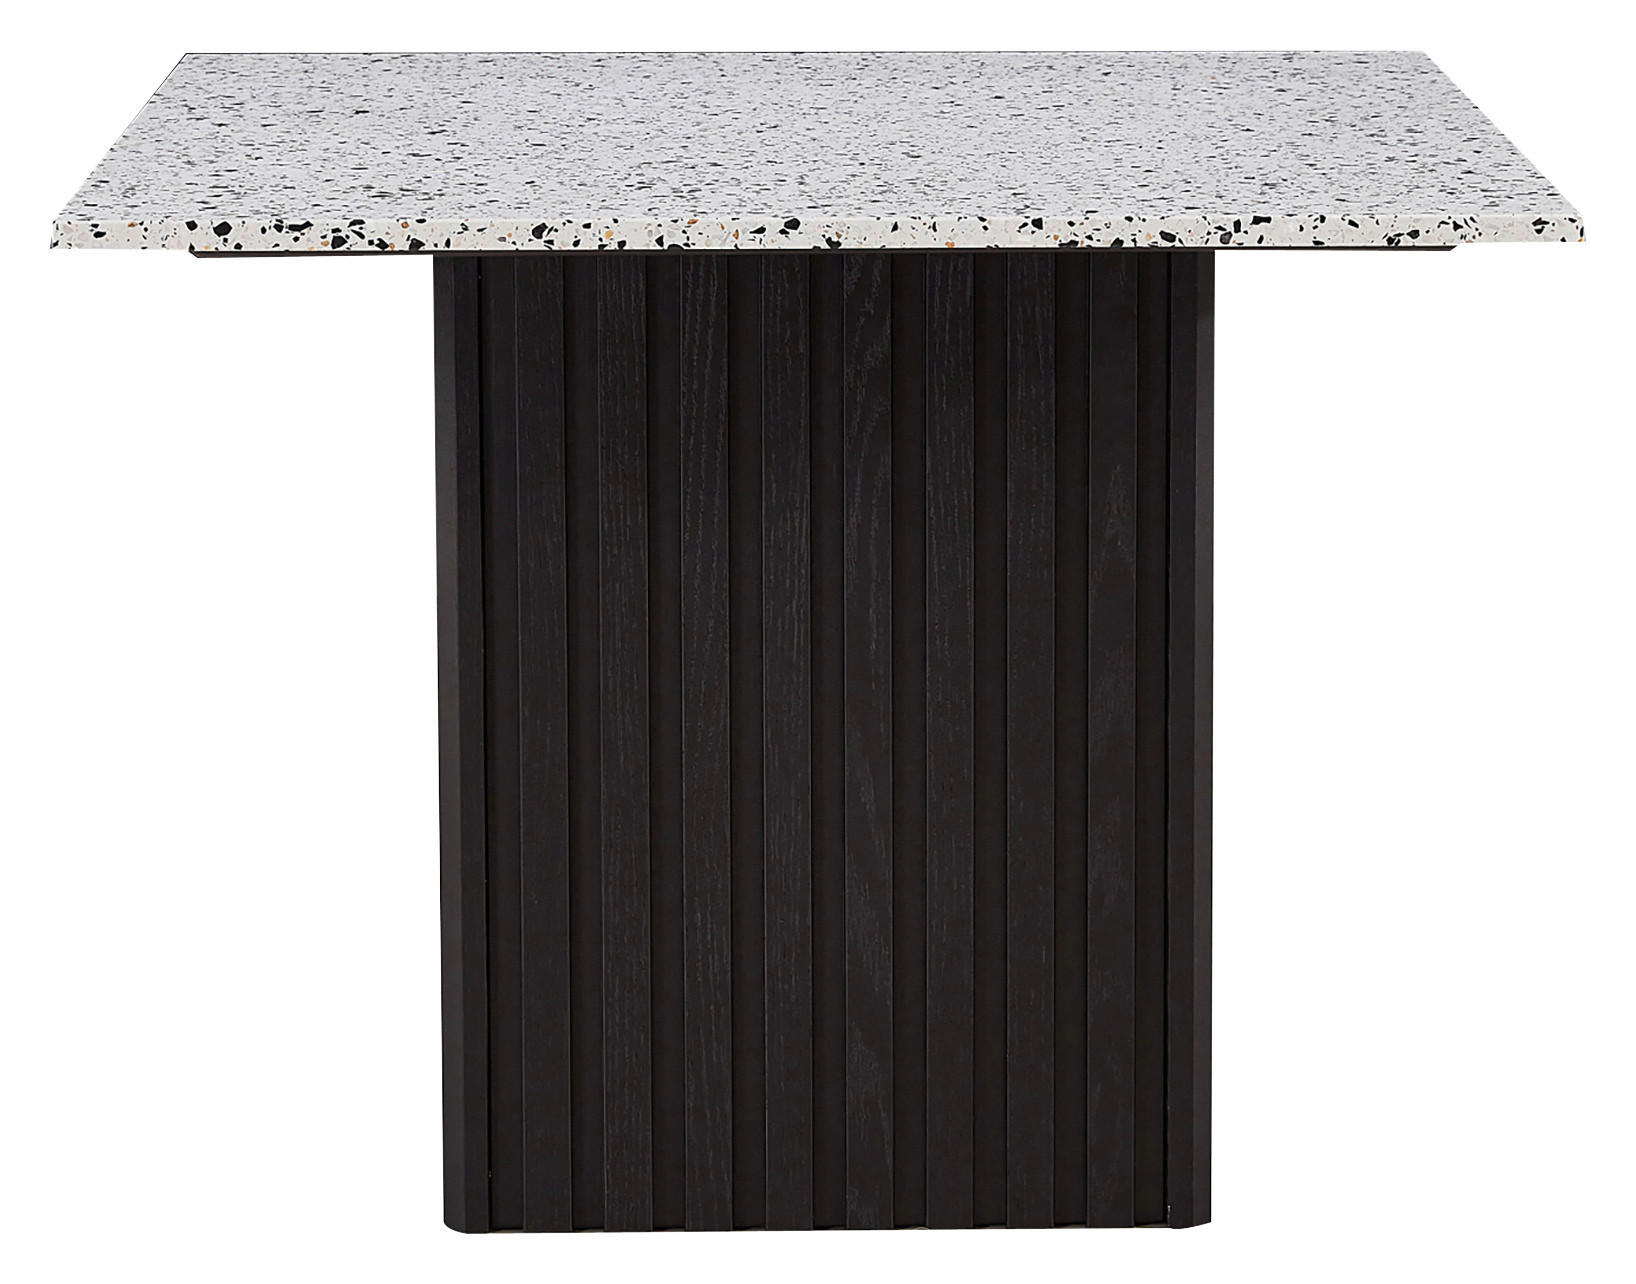 MATBORD i trä, sten 100/100/73 cm   - multicolor/svart, Design, trä/sten (100/100/73cm)